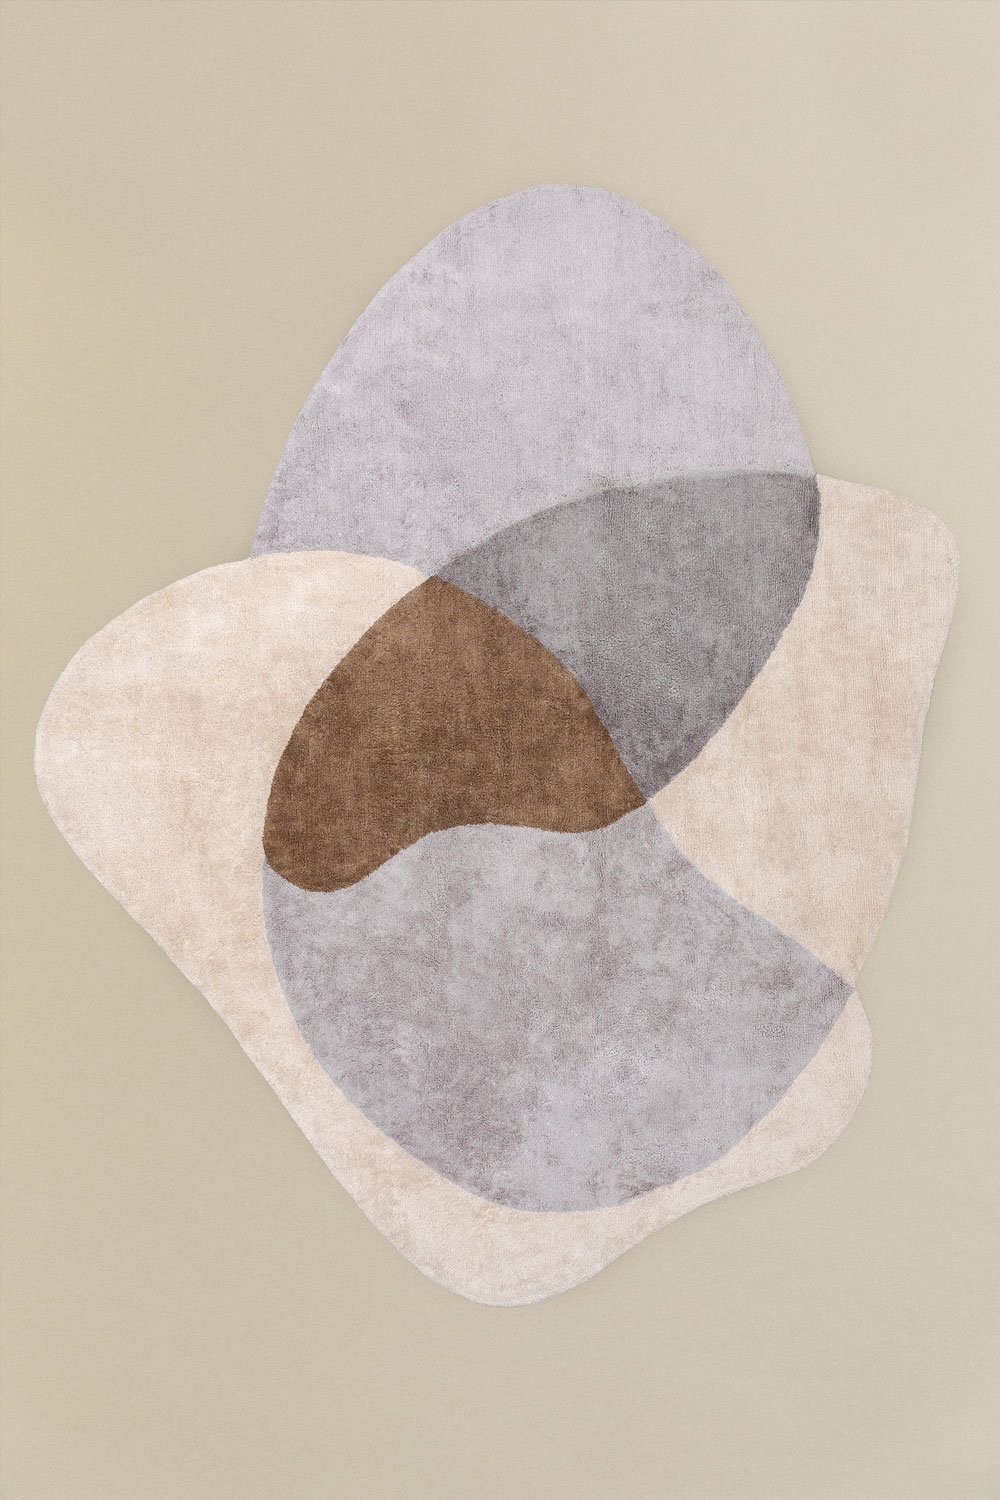 Tappeto in cotone (280x240 cm) Istred, immagine della galleria 1